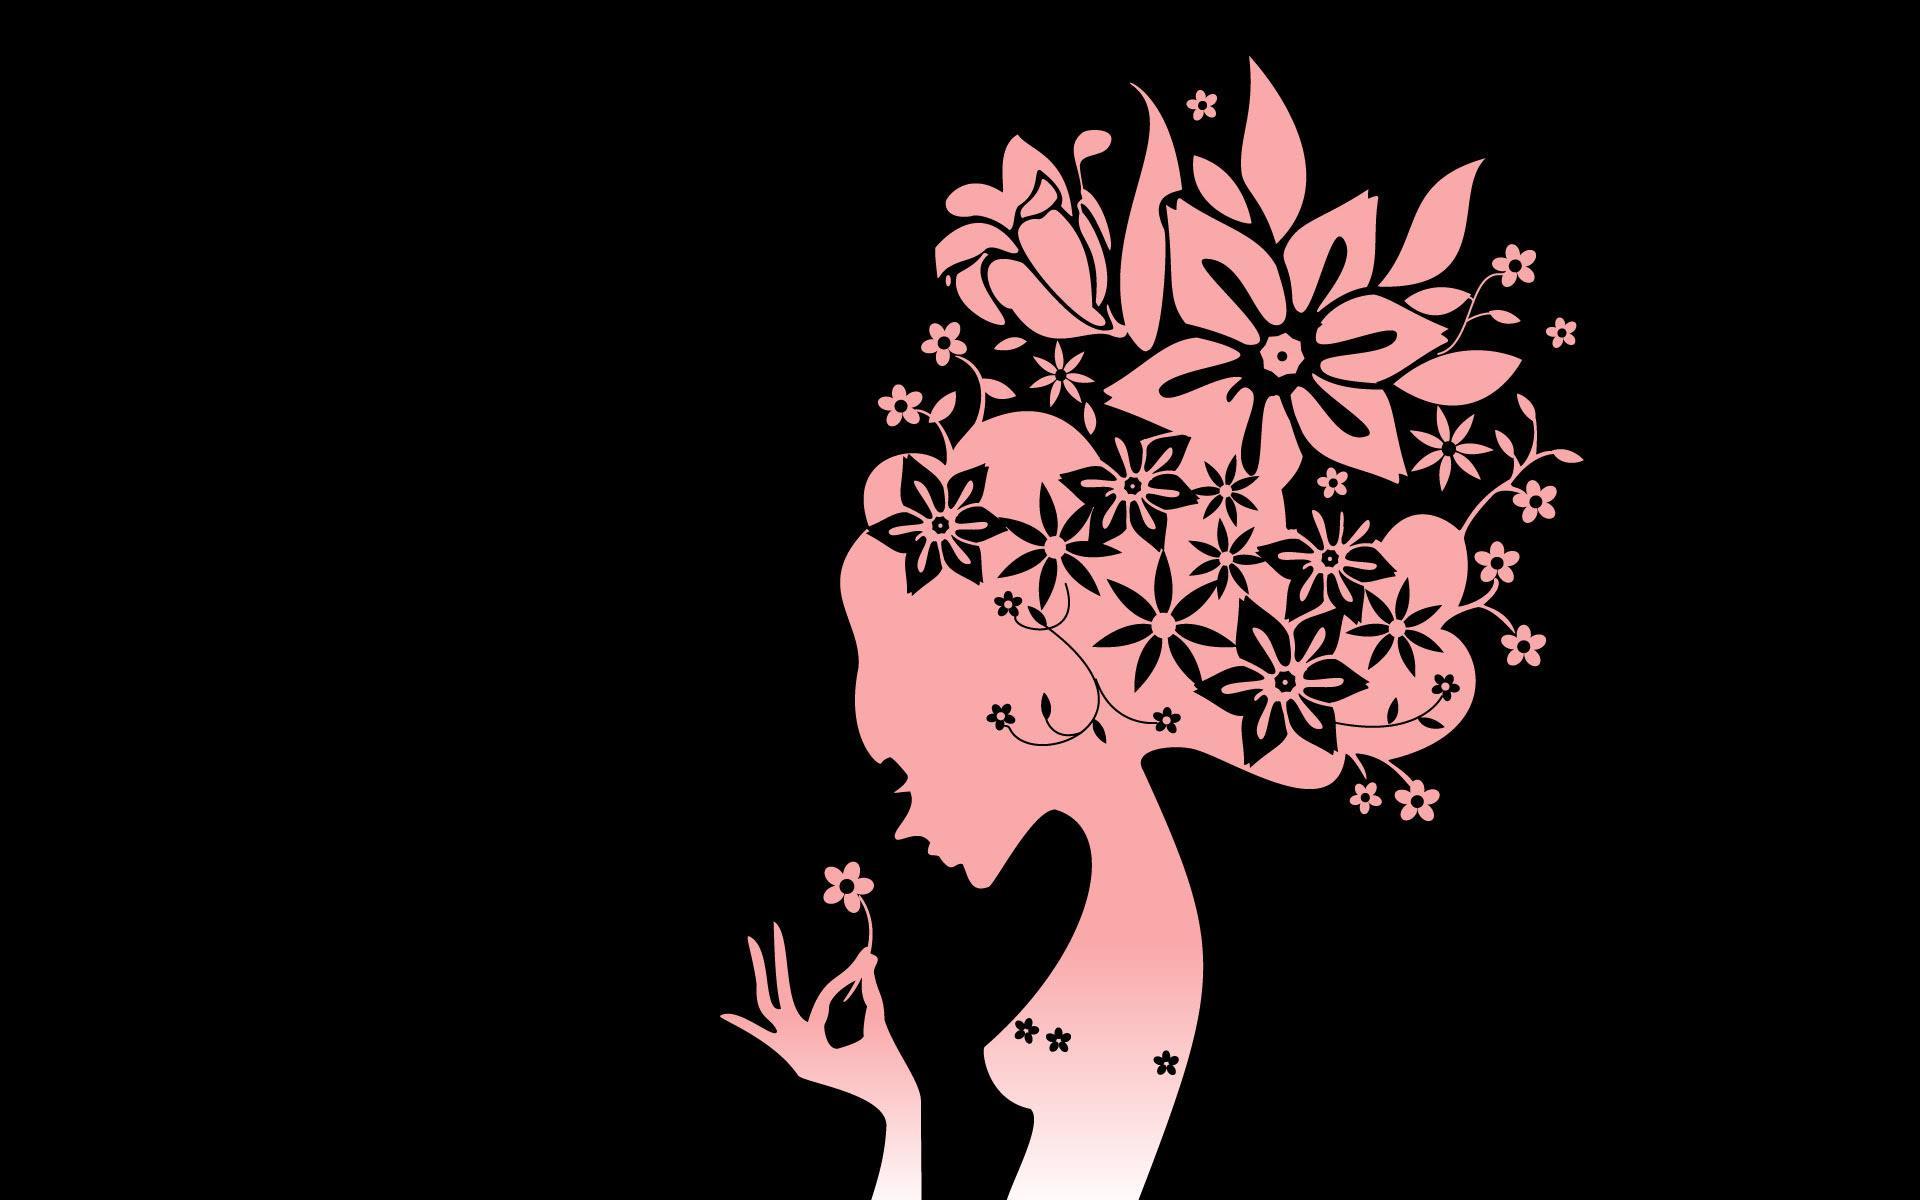 소녀를위한 벽지,그래픽 디자인,삽화,실루엣,식물,나무